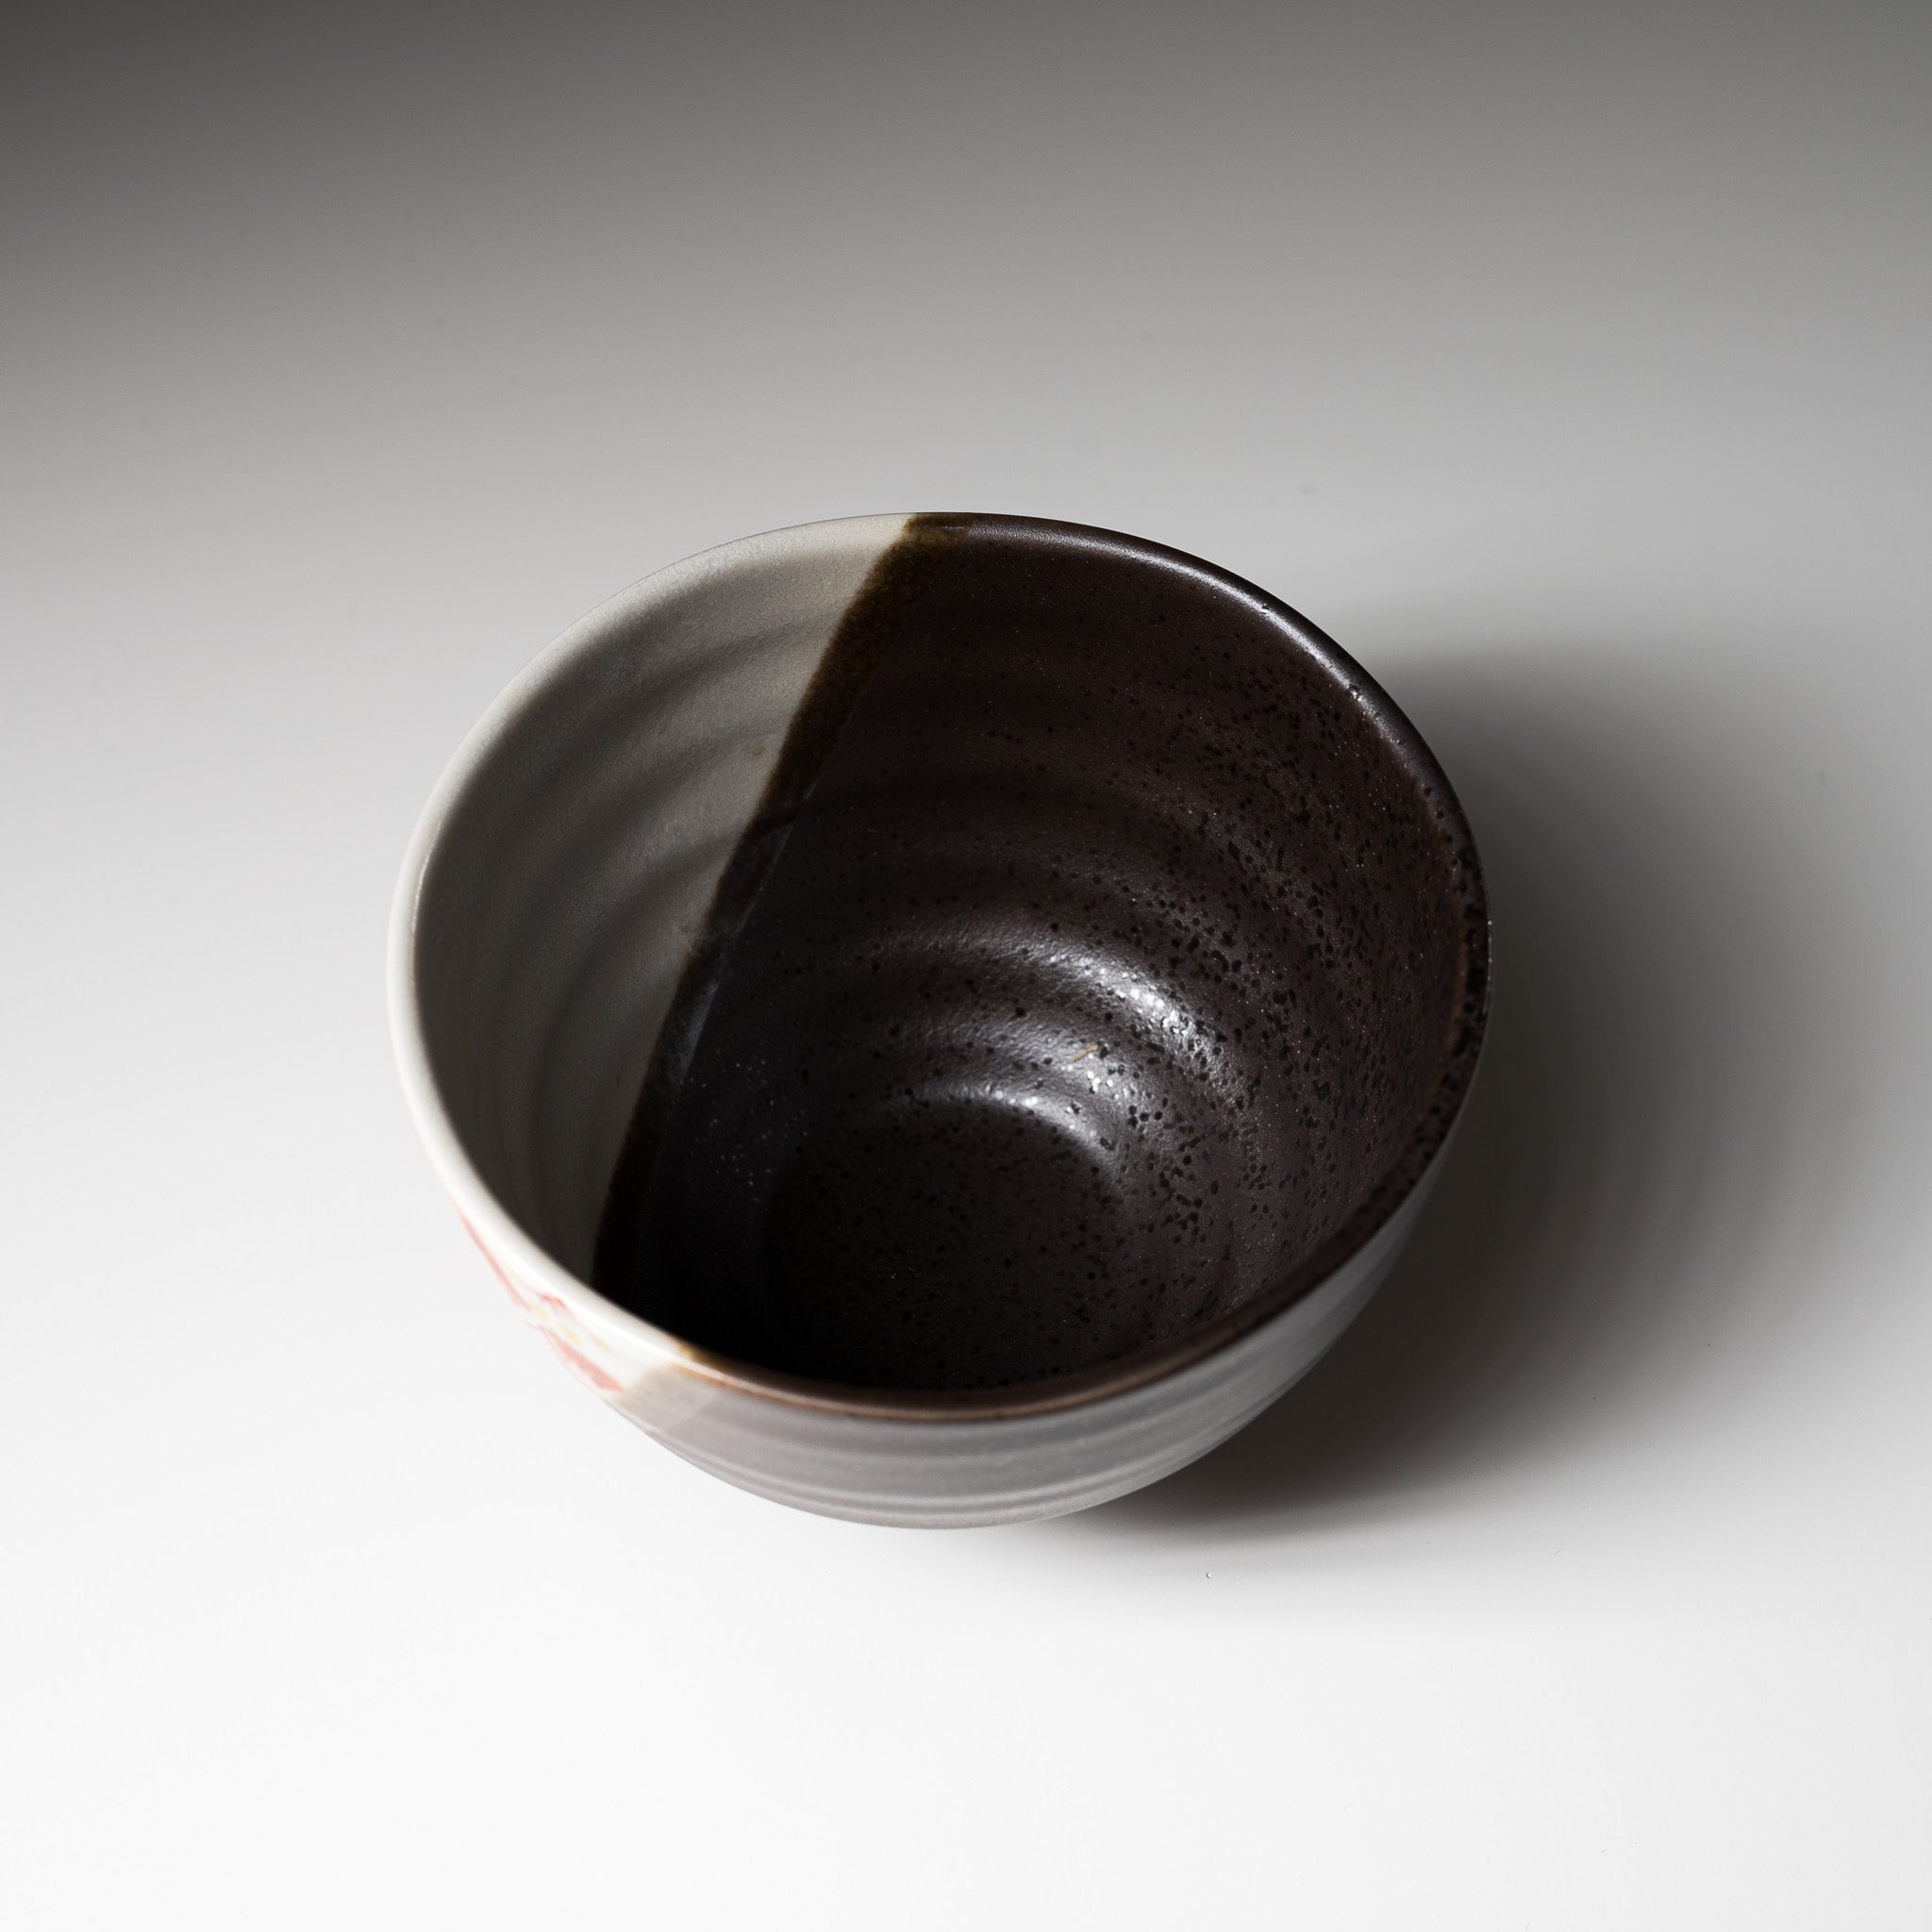 Kutani ware Large Rice Bowl - Hanamaru / 九谷焼 茶碗